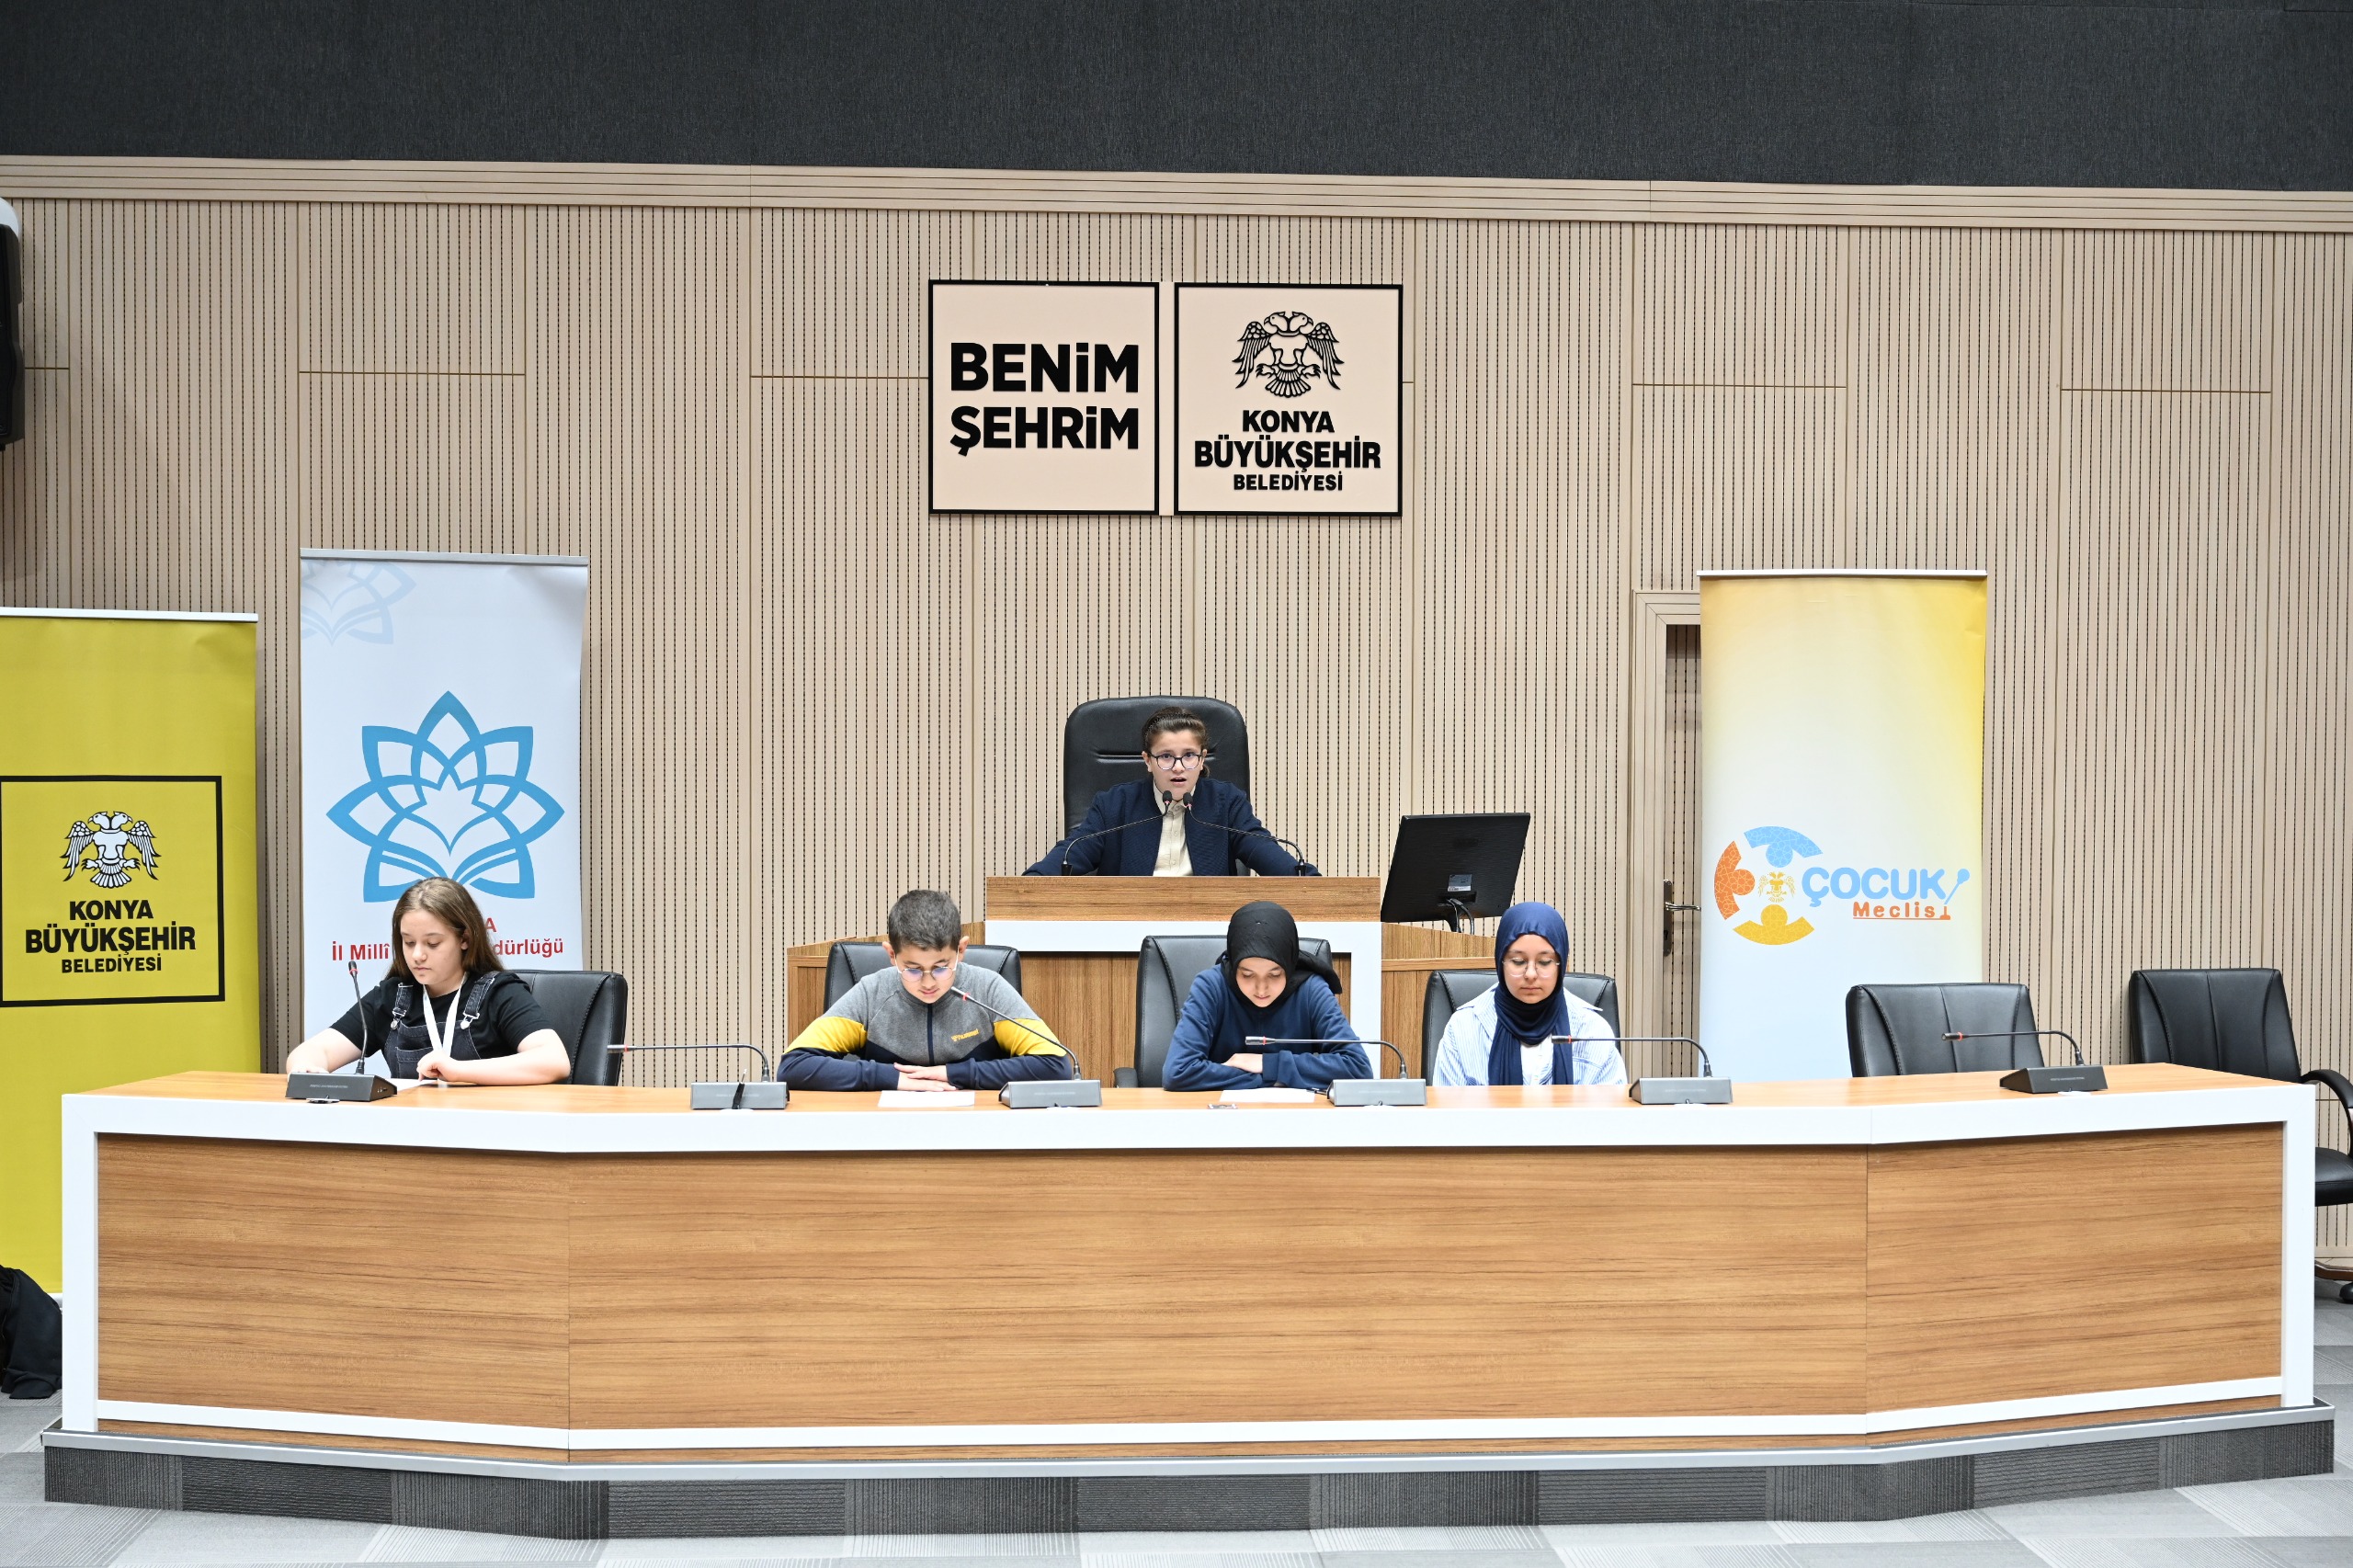 Konya Büyükşehir Belediyesi Çocuk Meclisi dönemin son toplantısını gerçekleştirdi